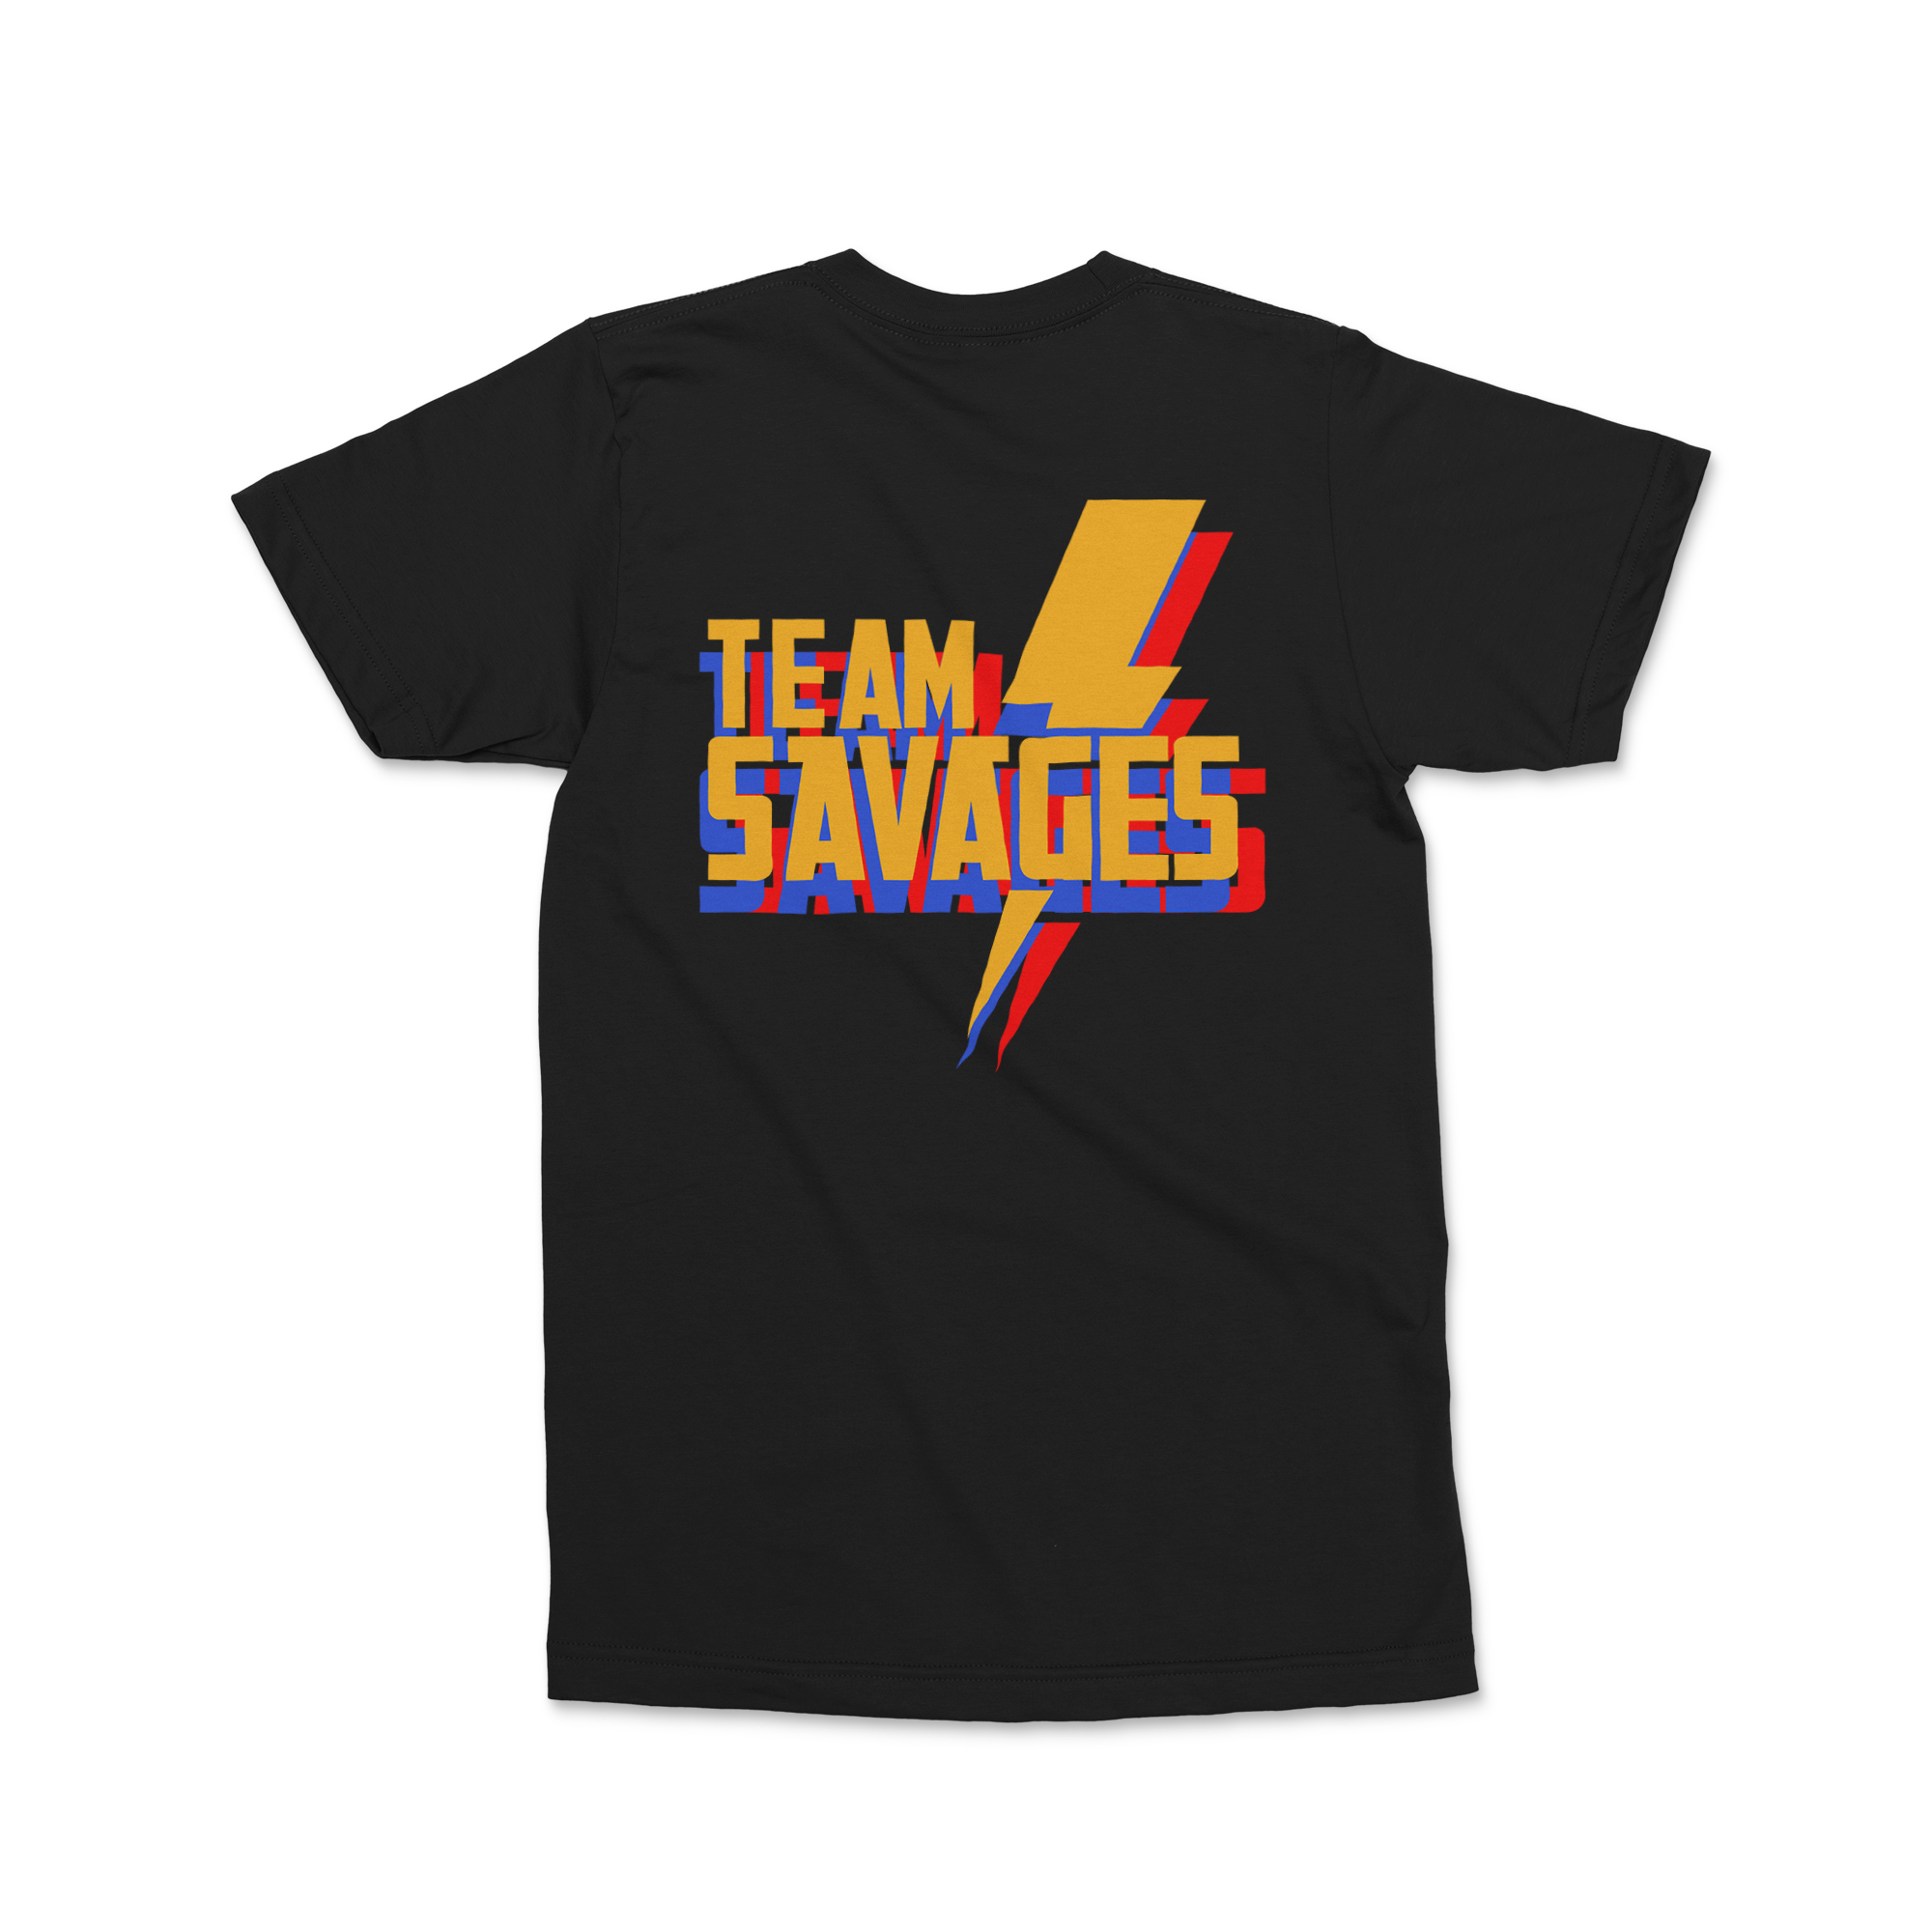 Team Savage Training Tee in black